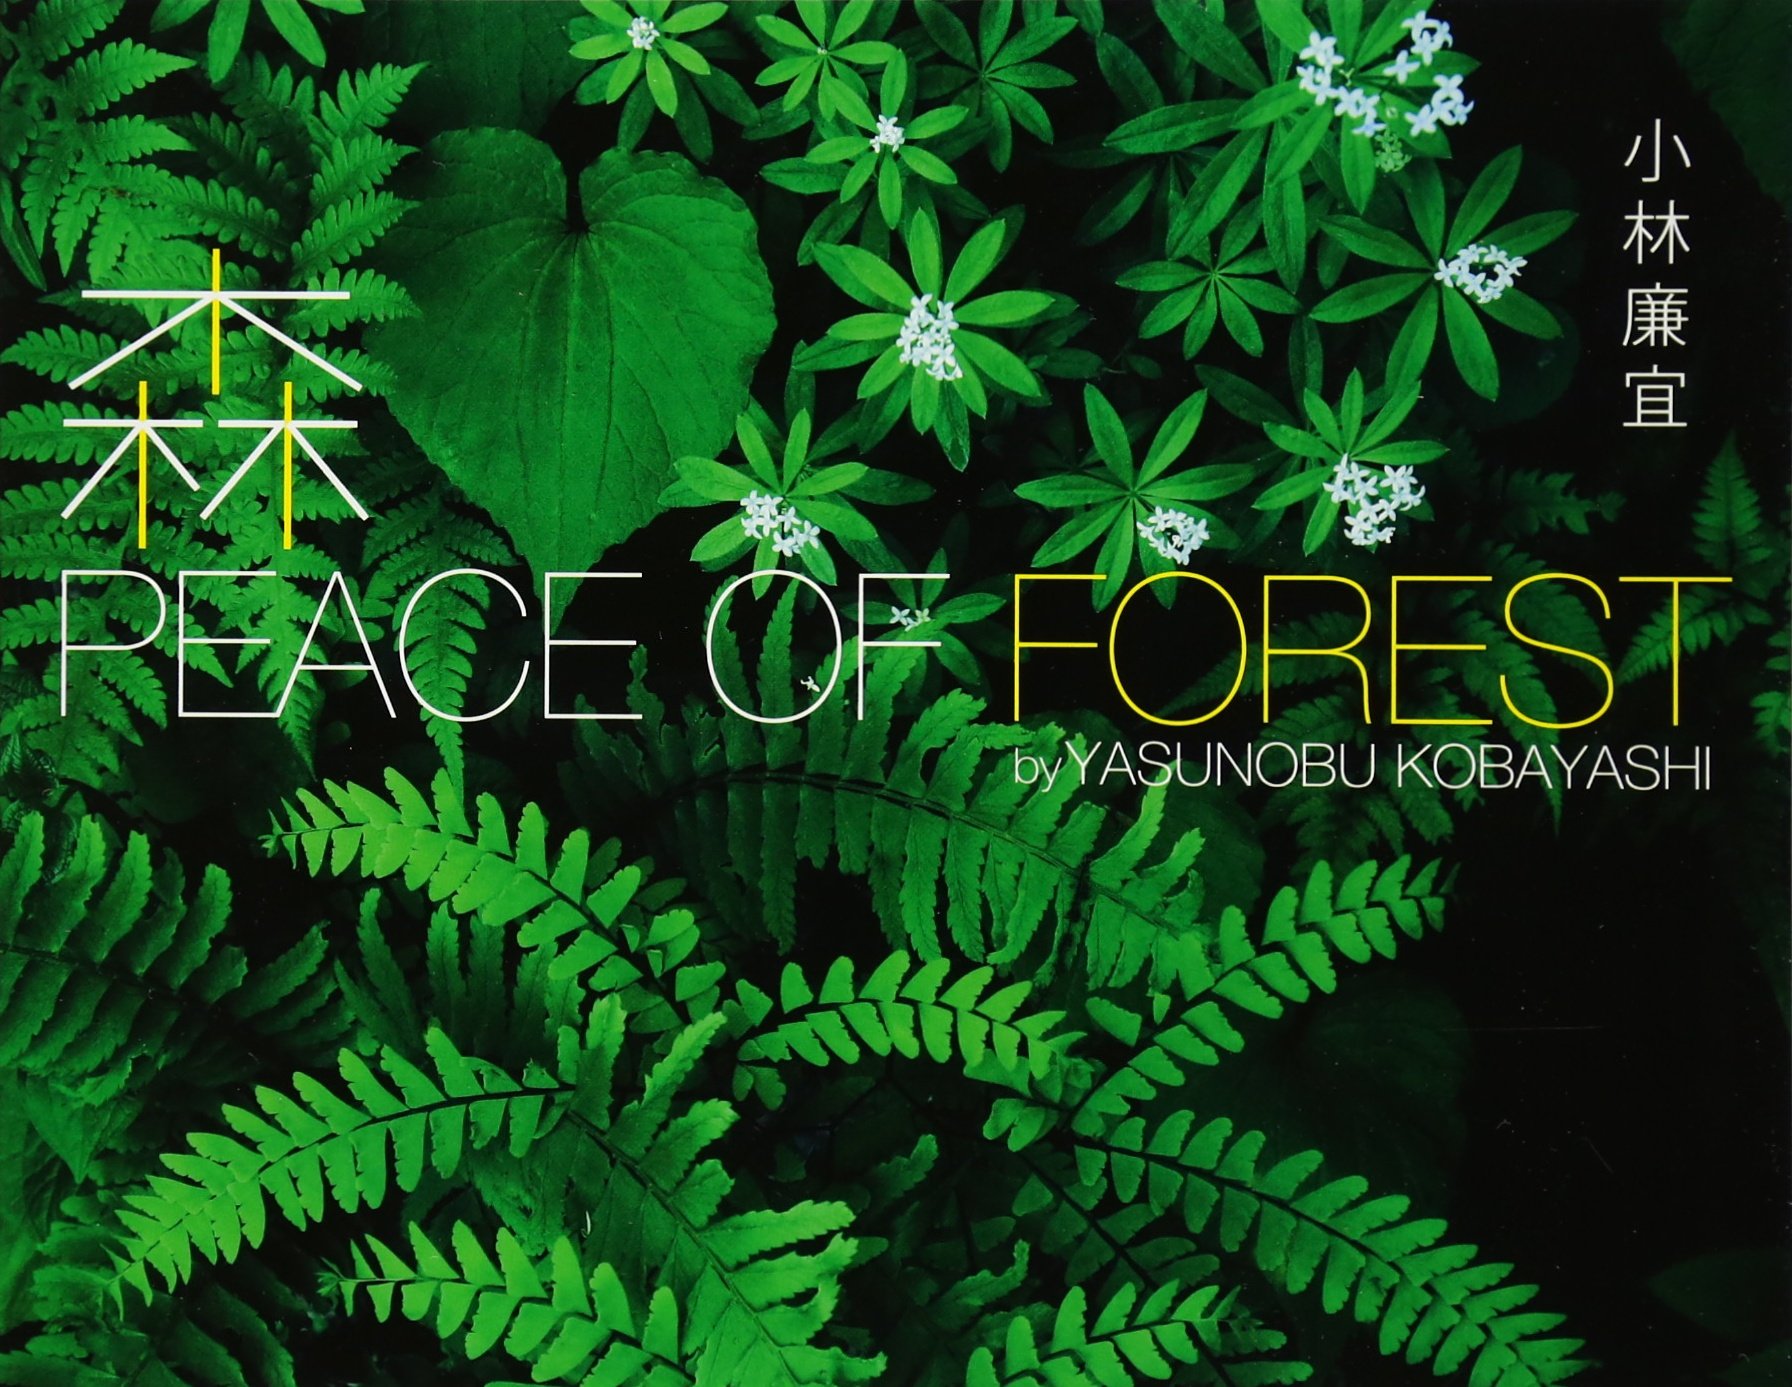 森 PEACE OF FOREST